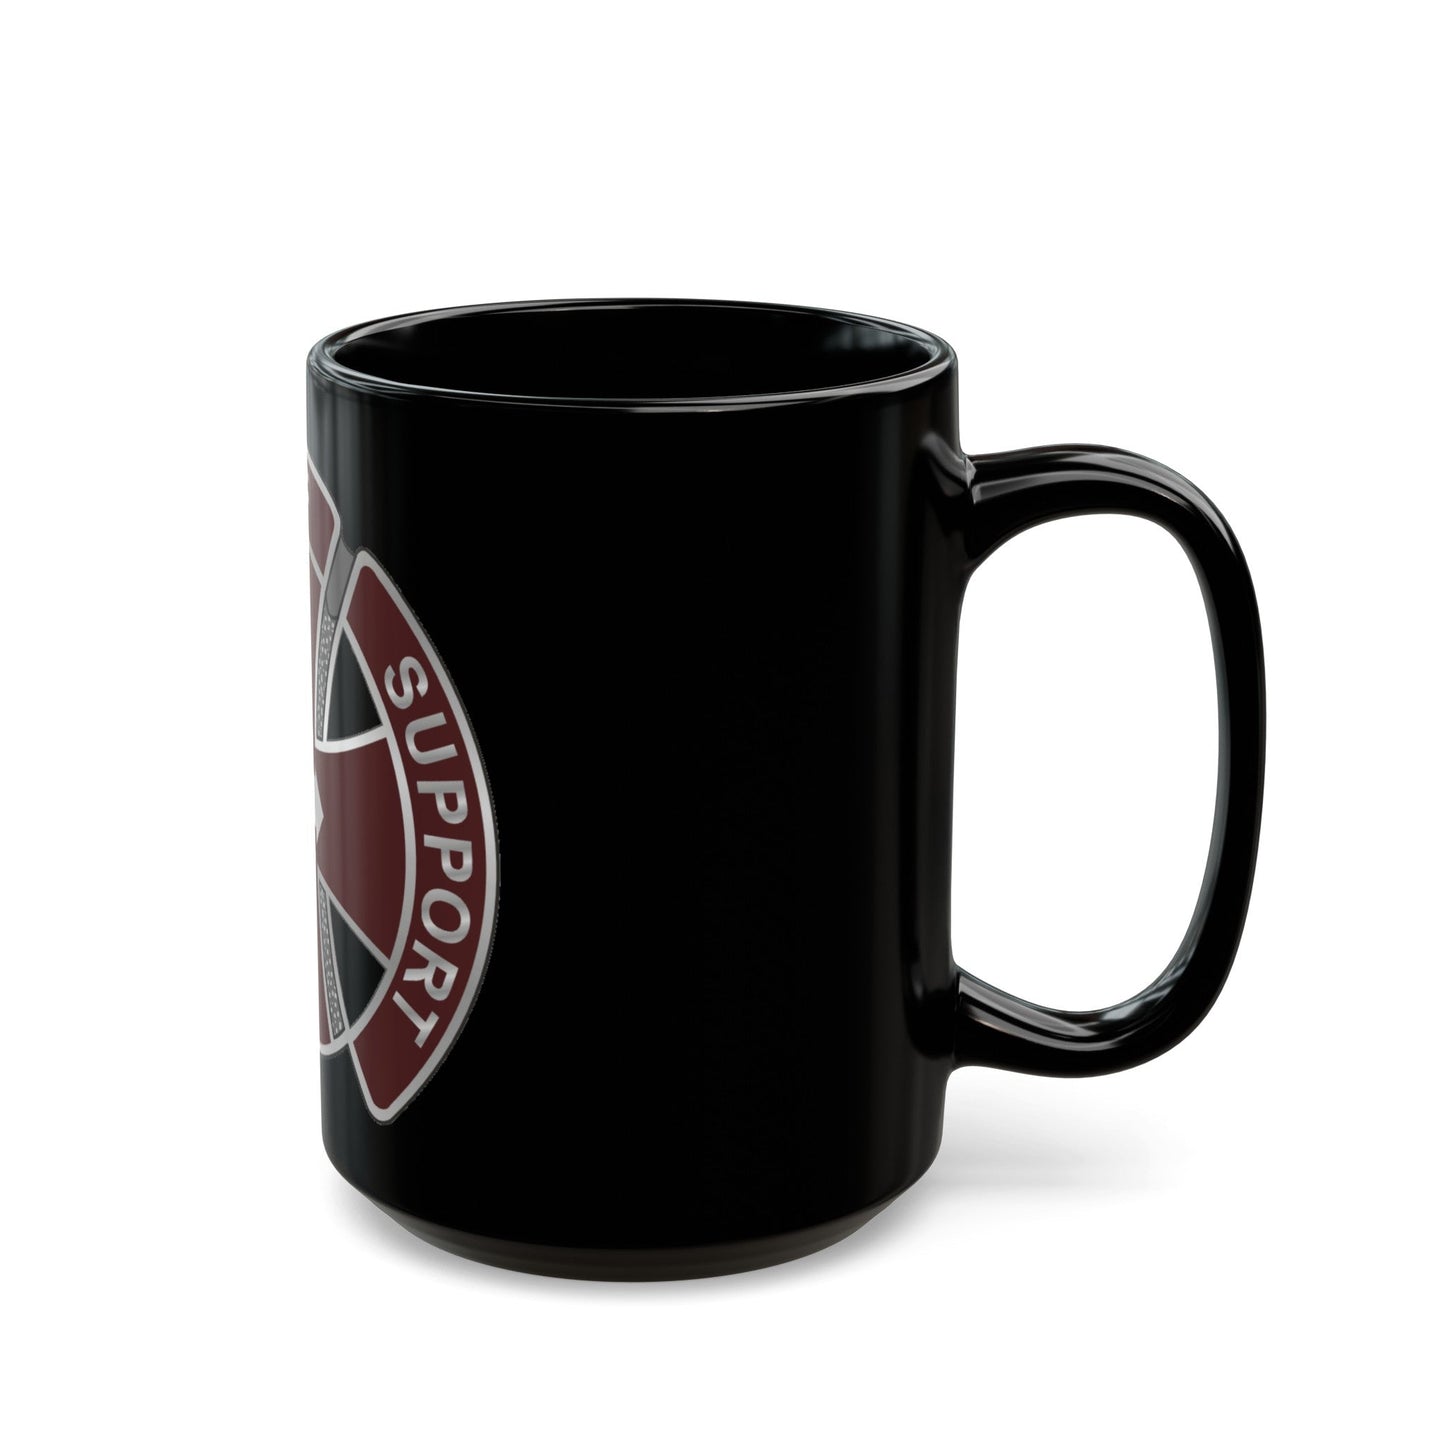 147 Medical Battalion1 (U.S. Army) Black Coffee Mug-The Sticker Space